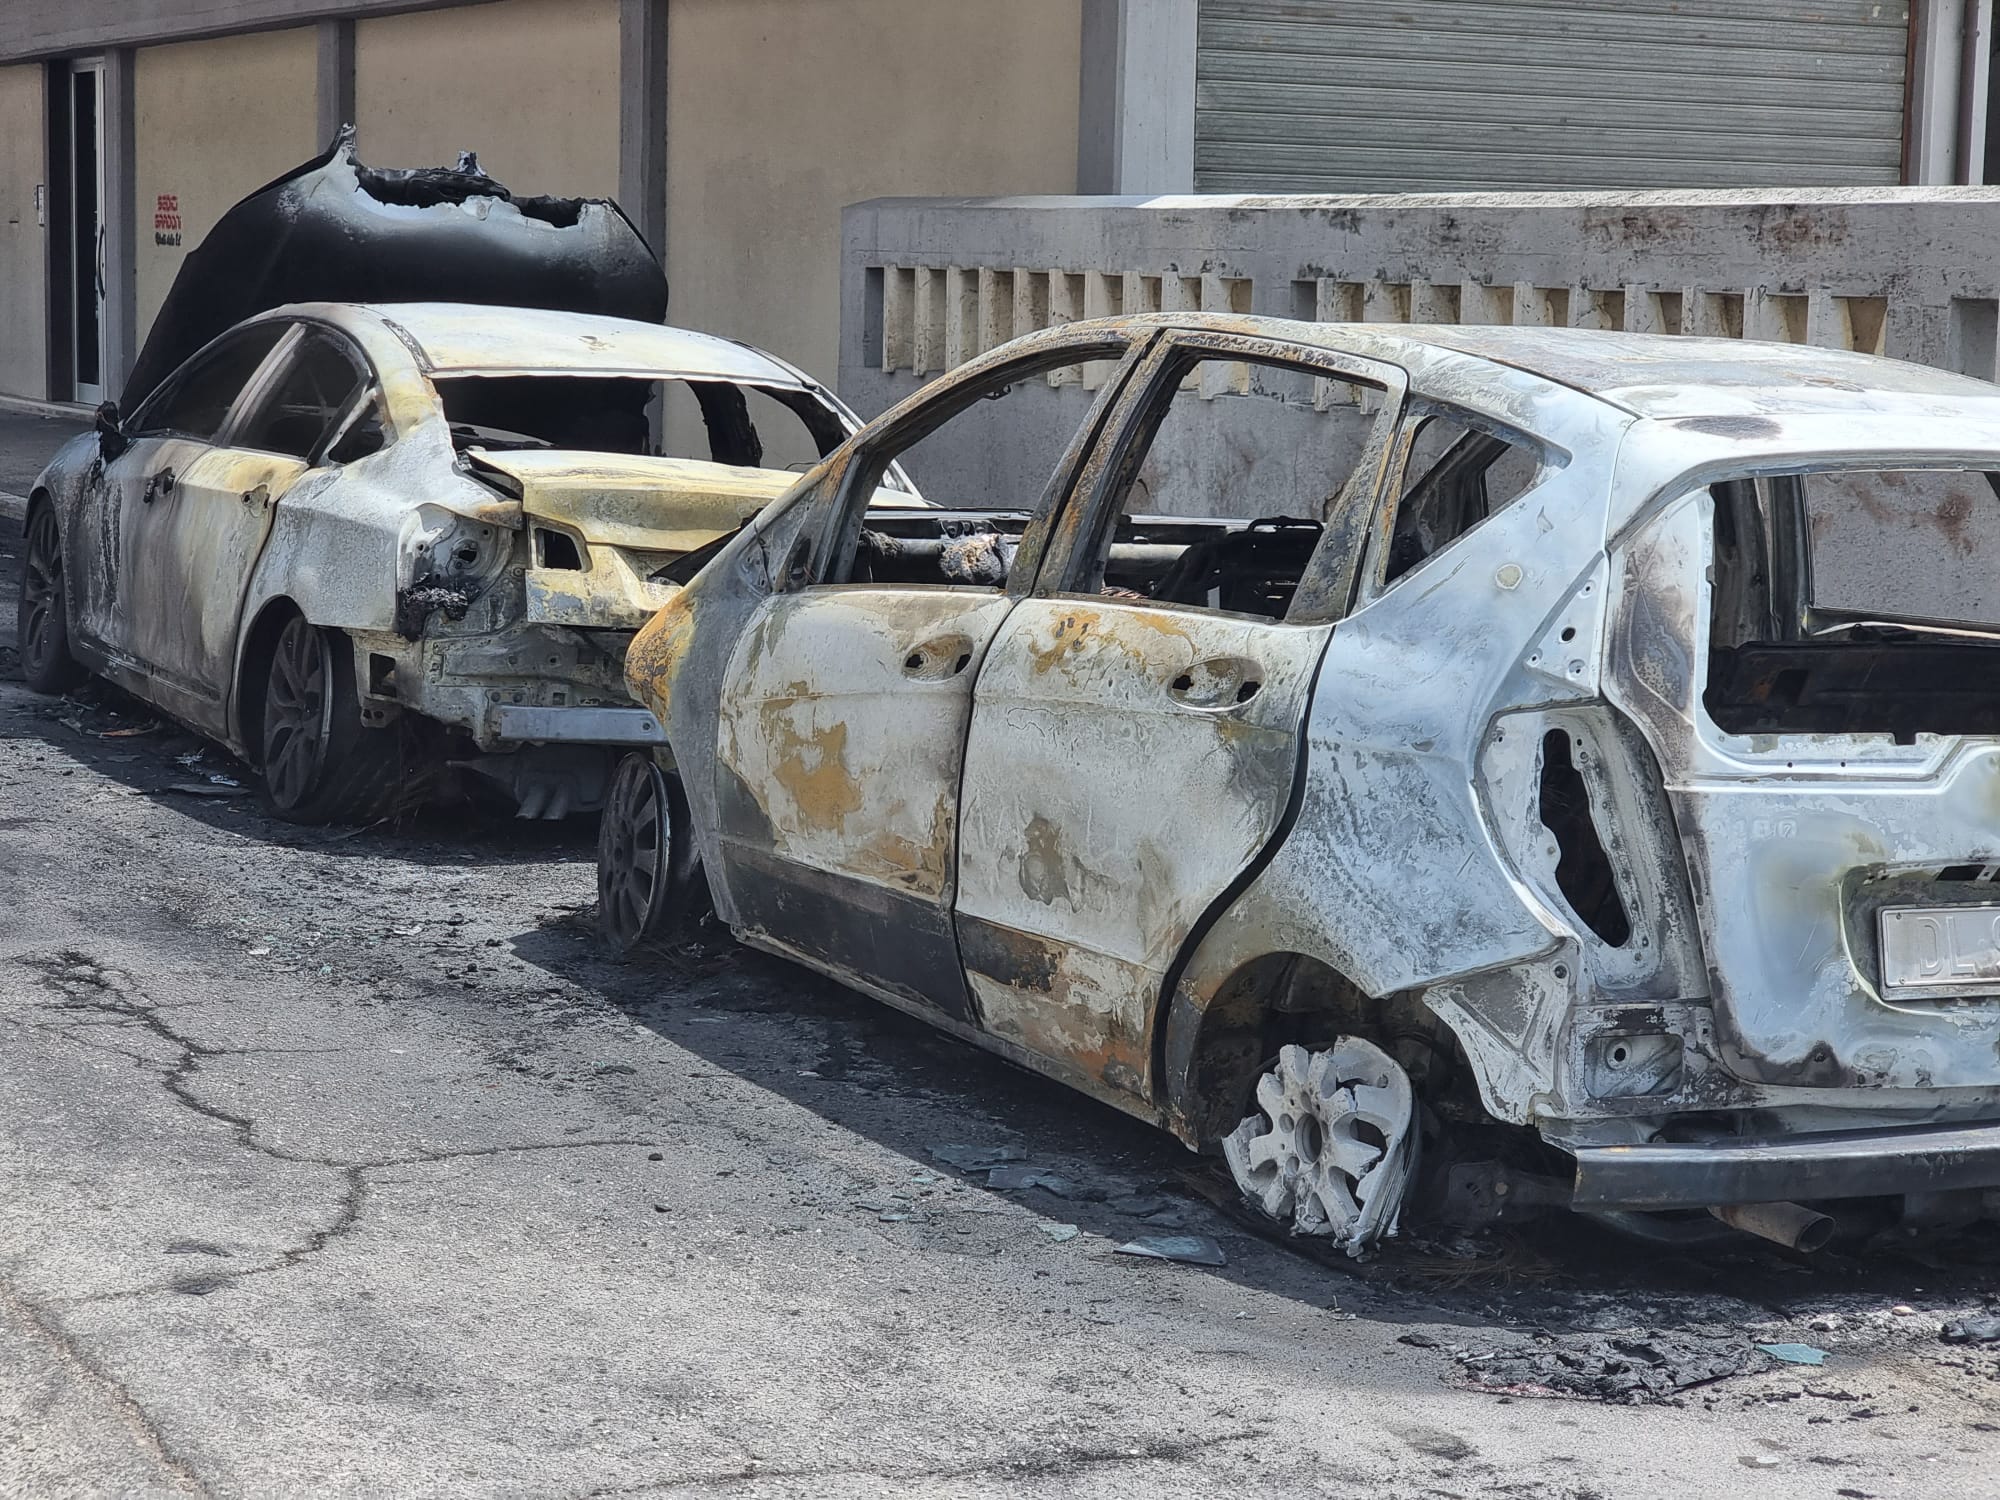 Teramo – Due auto in fiamme, non si esclude il dolo